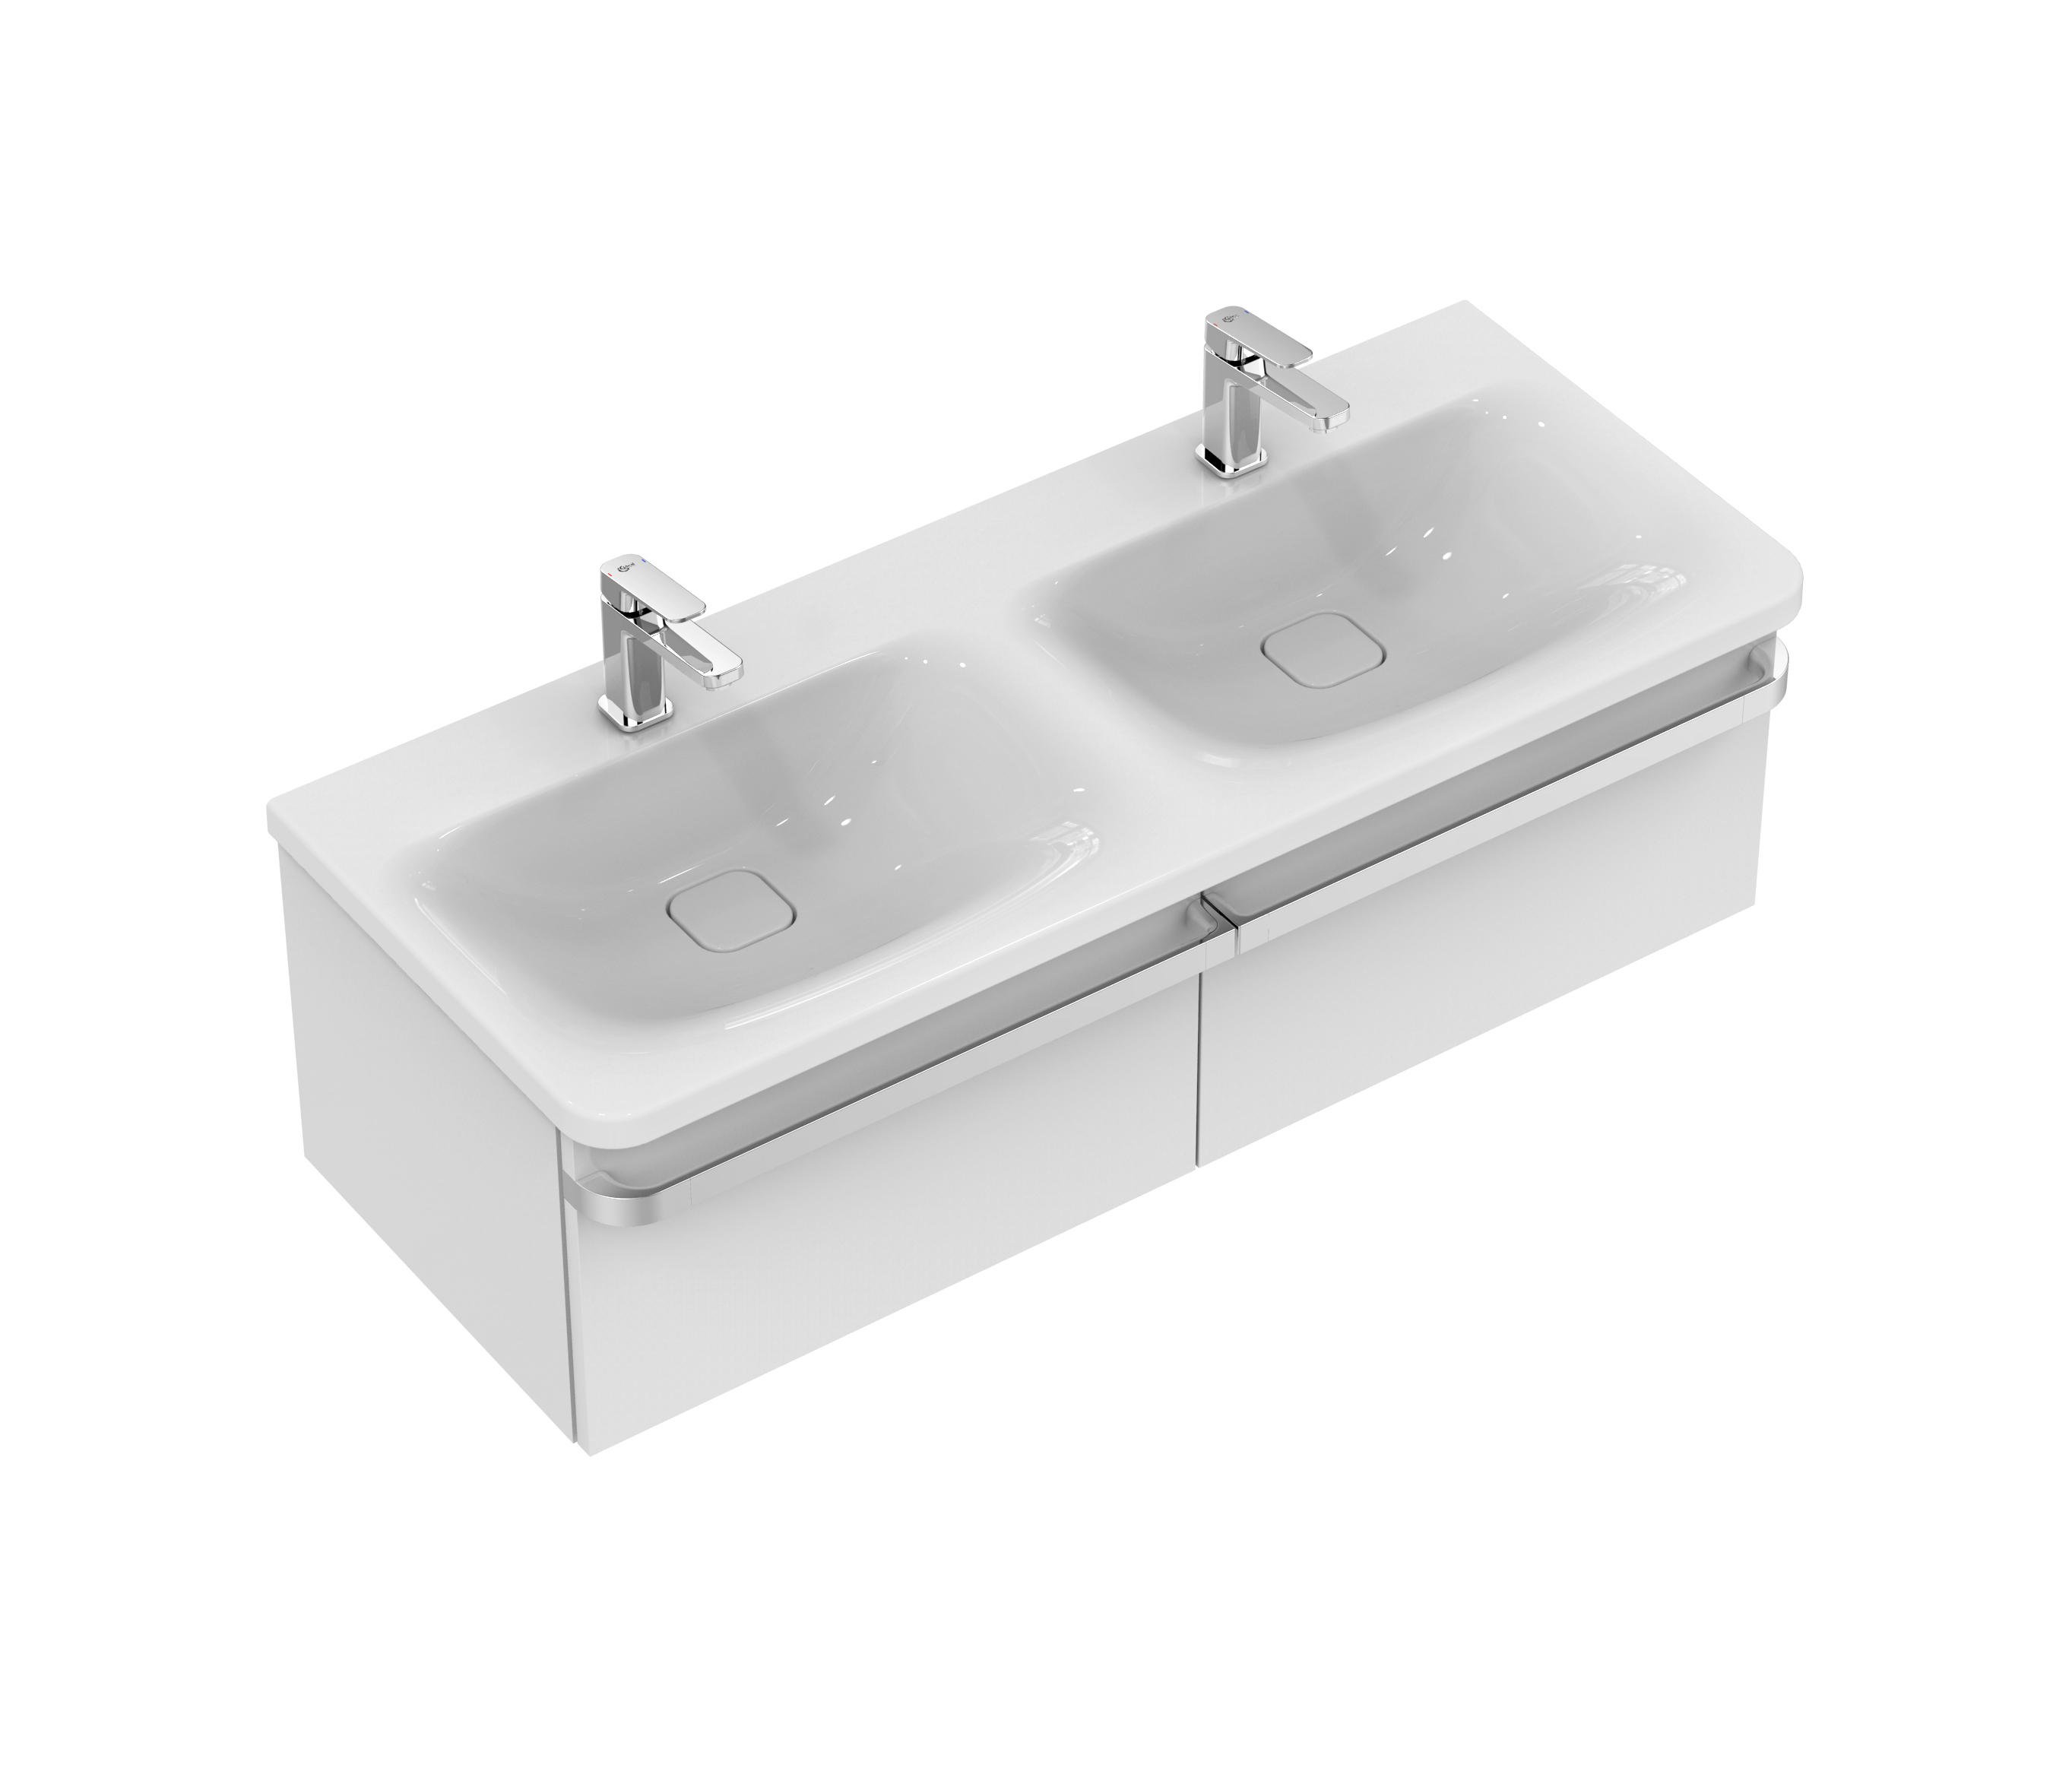 Ванна с двумя смесителями. Ideal Standard Lux Tonic II. Раковина подвесная ideal Standard moments прямоугольная. Ideal Standard Tonic k2166hg. Раковина двойная для ванной Иддис.